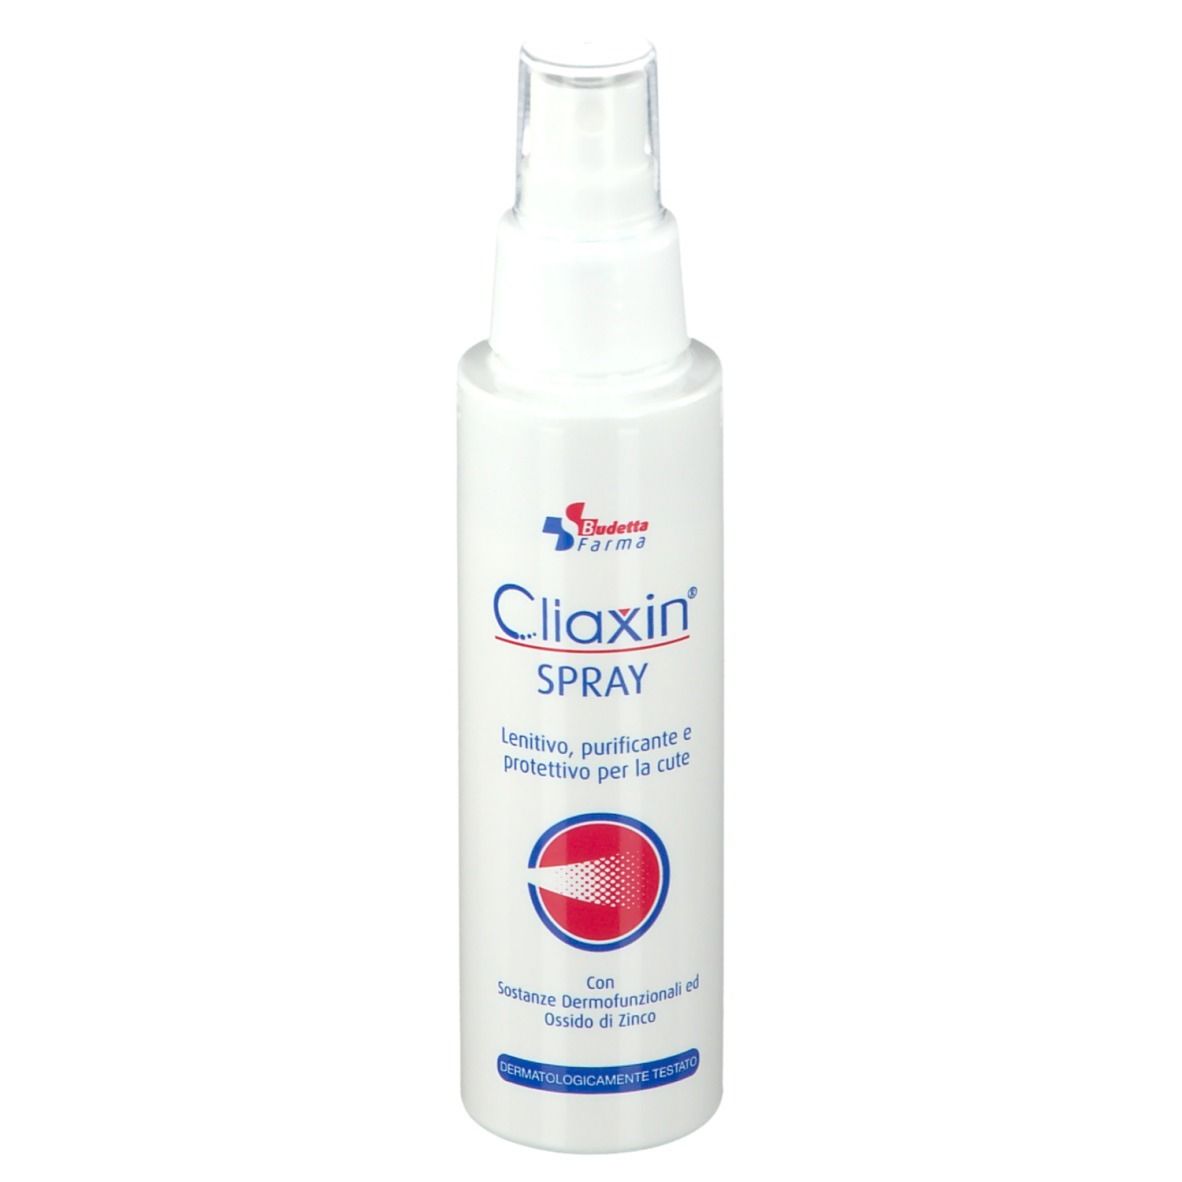 Cliaxin® Spray